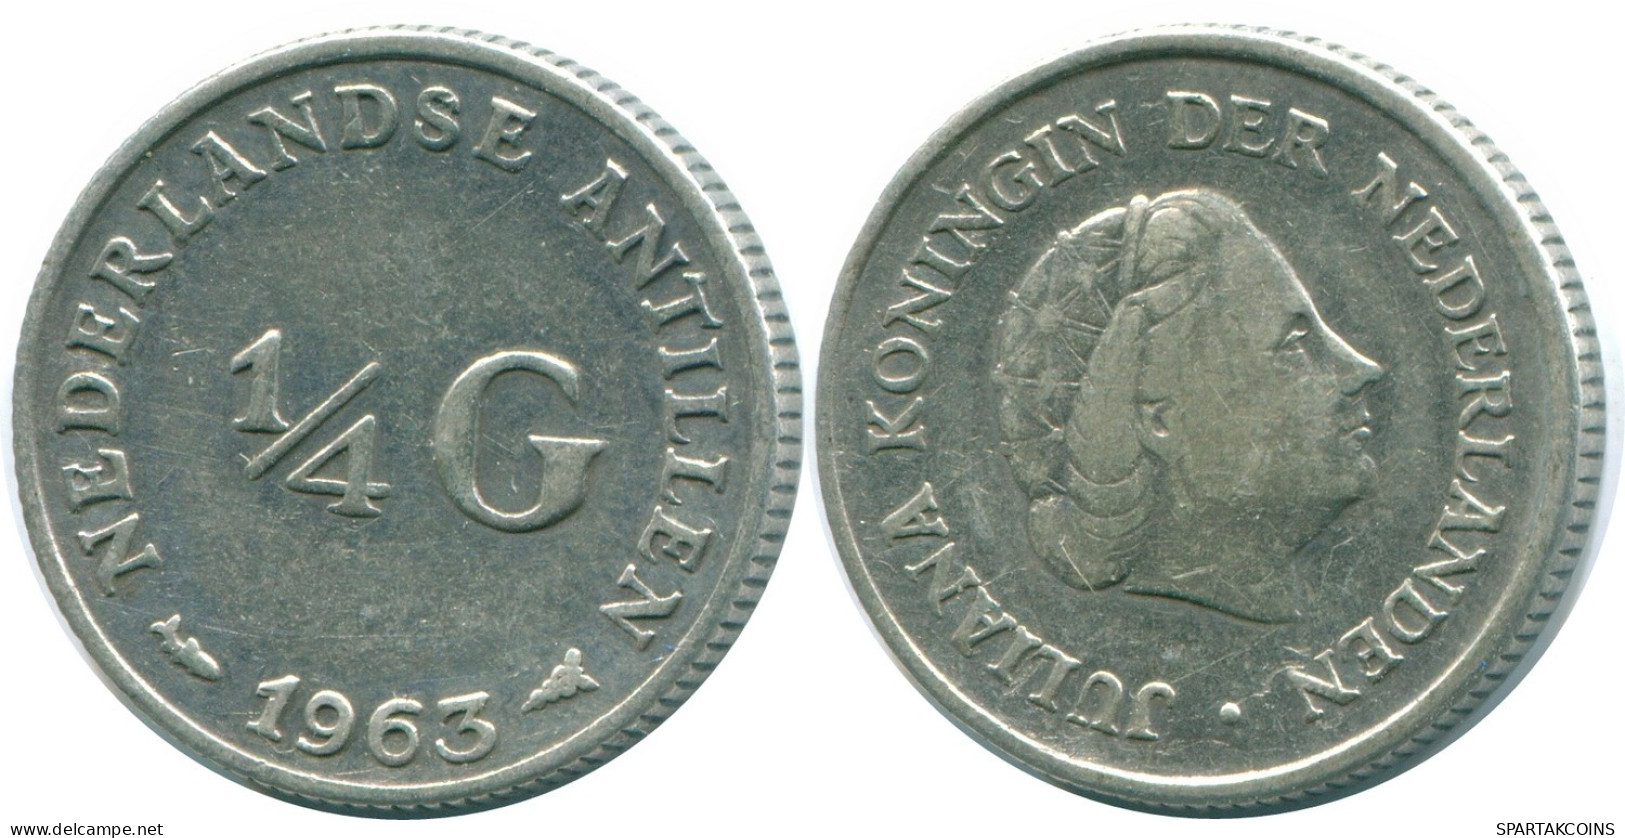 1/4 GULDEN 1962 NIEDERLÄNDISCHE ANTILLEN SILBER Koloniale Münze #NL11177.4.D.A - Nederlandse Antillen